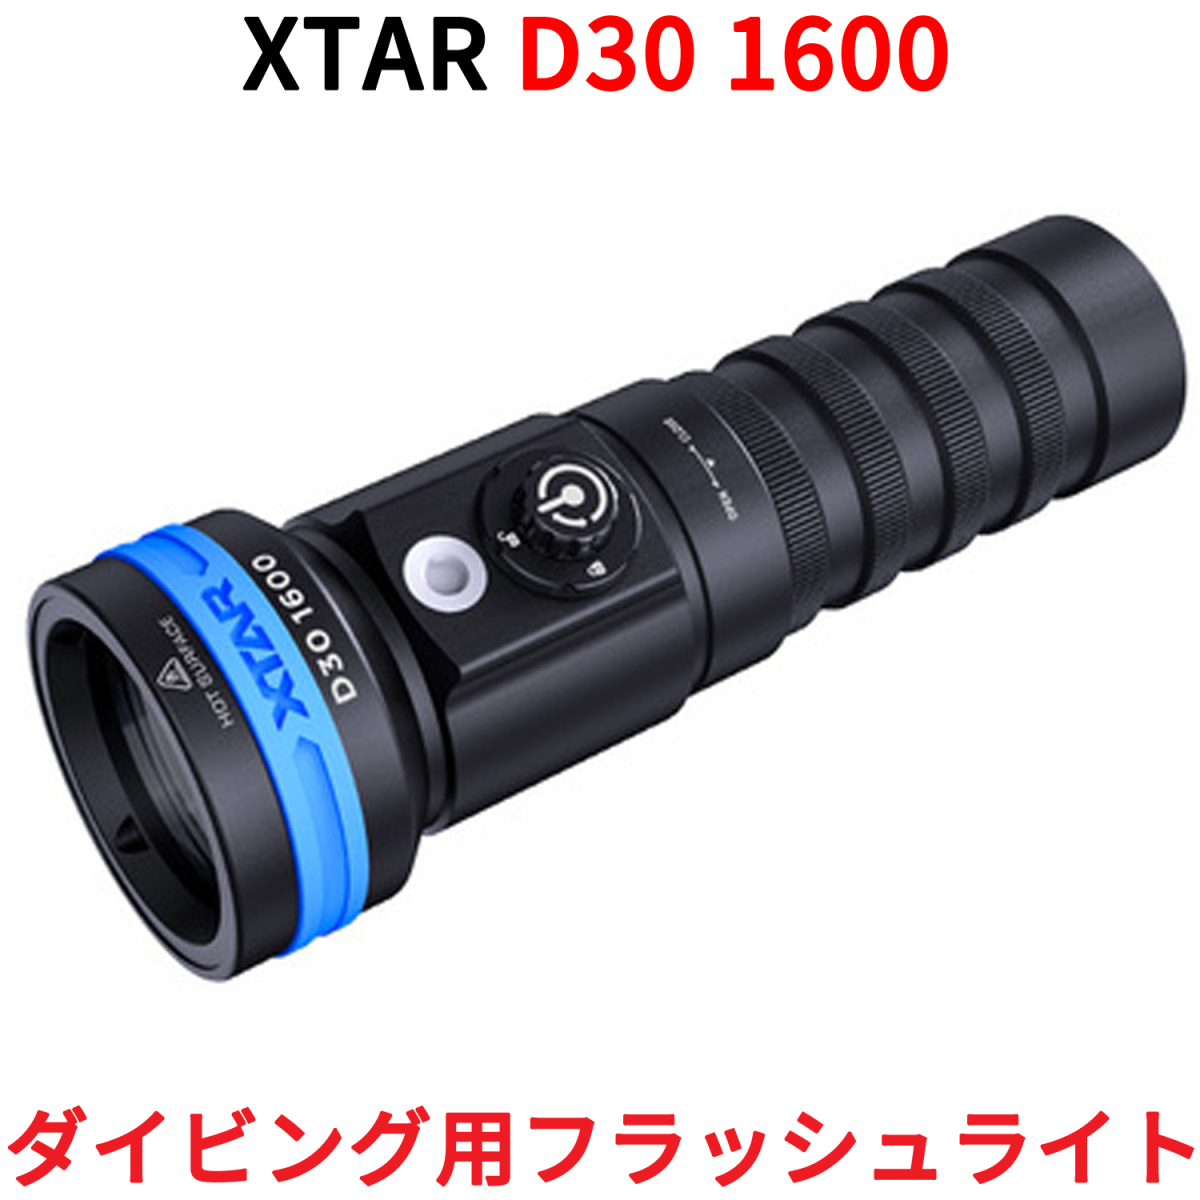 XTARek Star D30 1600 дайвинг свет 1600 люмен дайвинг для лампа светодиодной подсветки рука свет ручной фонарь мигающий свет LED свет водонепроницаемый 